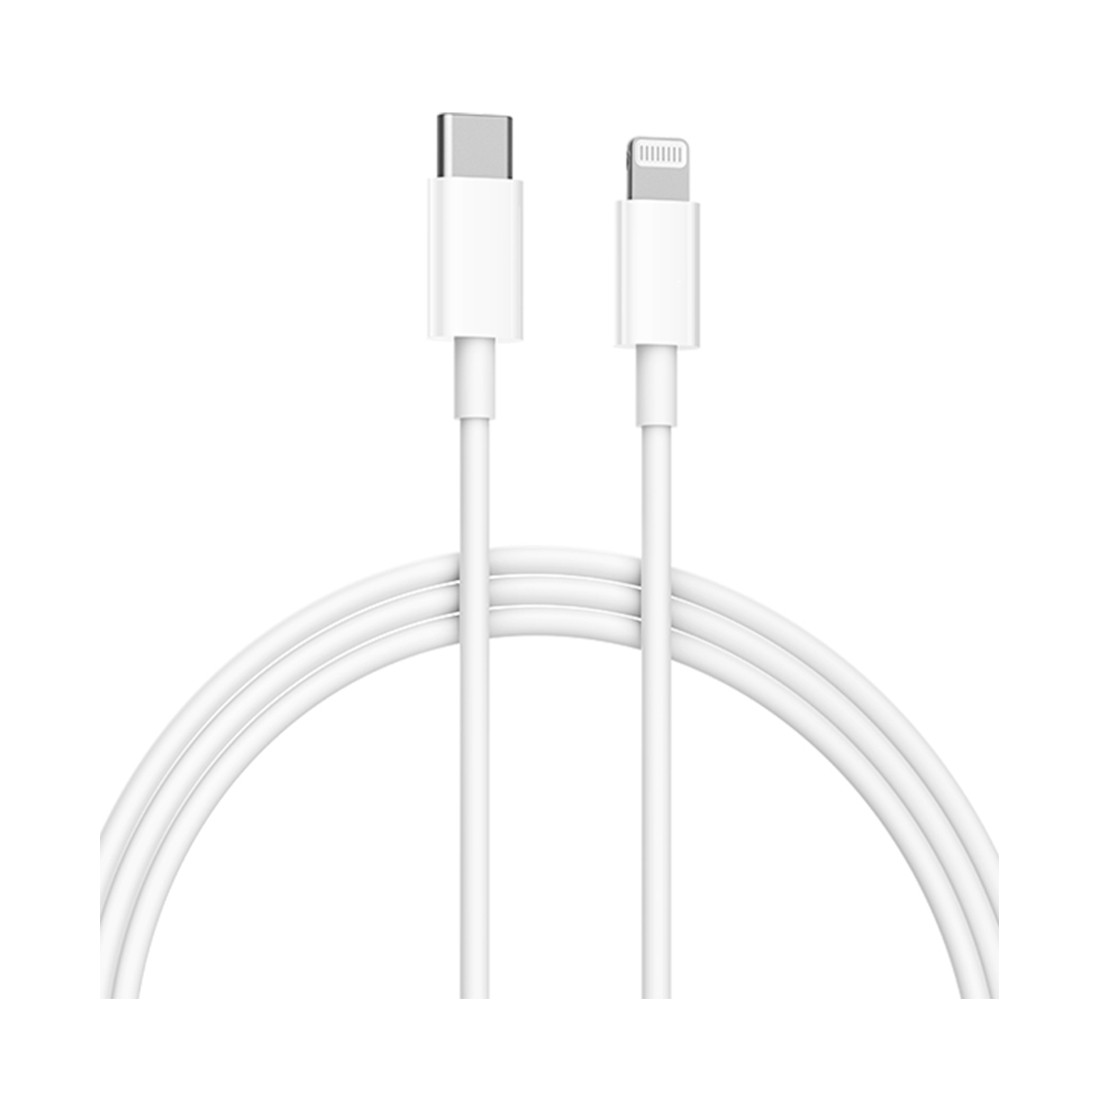 Интерфейсный кабель Xiaomi Mi Type-C to Lightning Cable 100см, фото 1